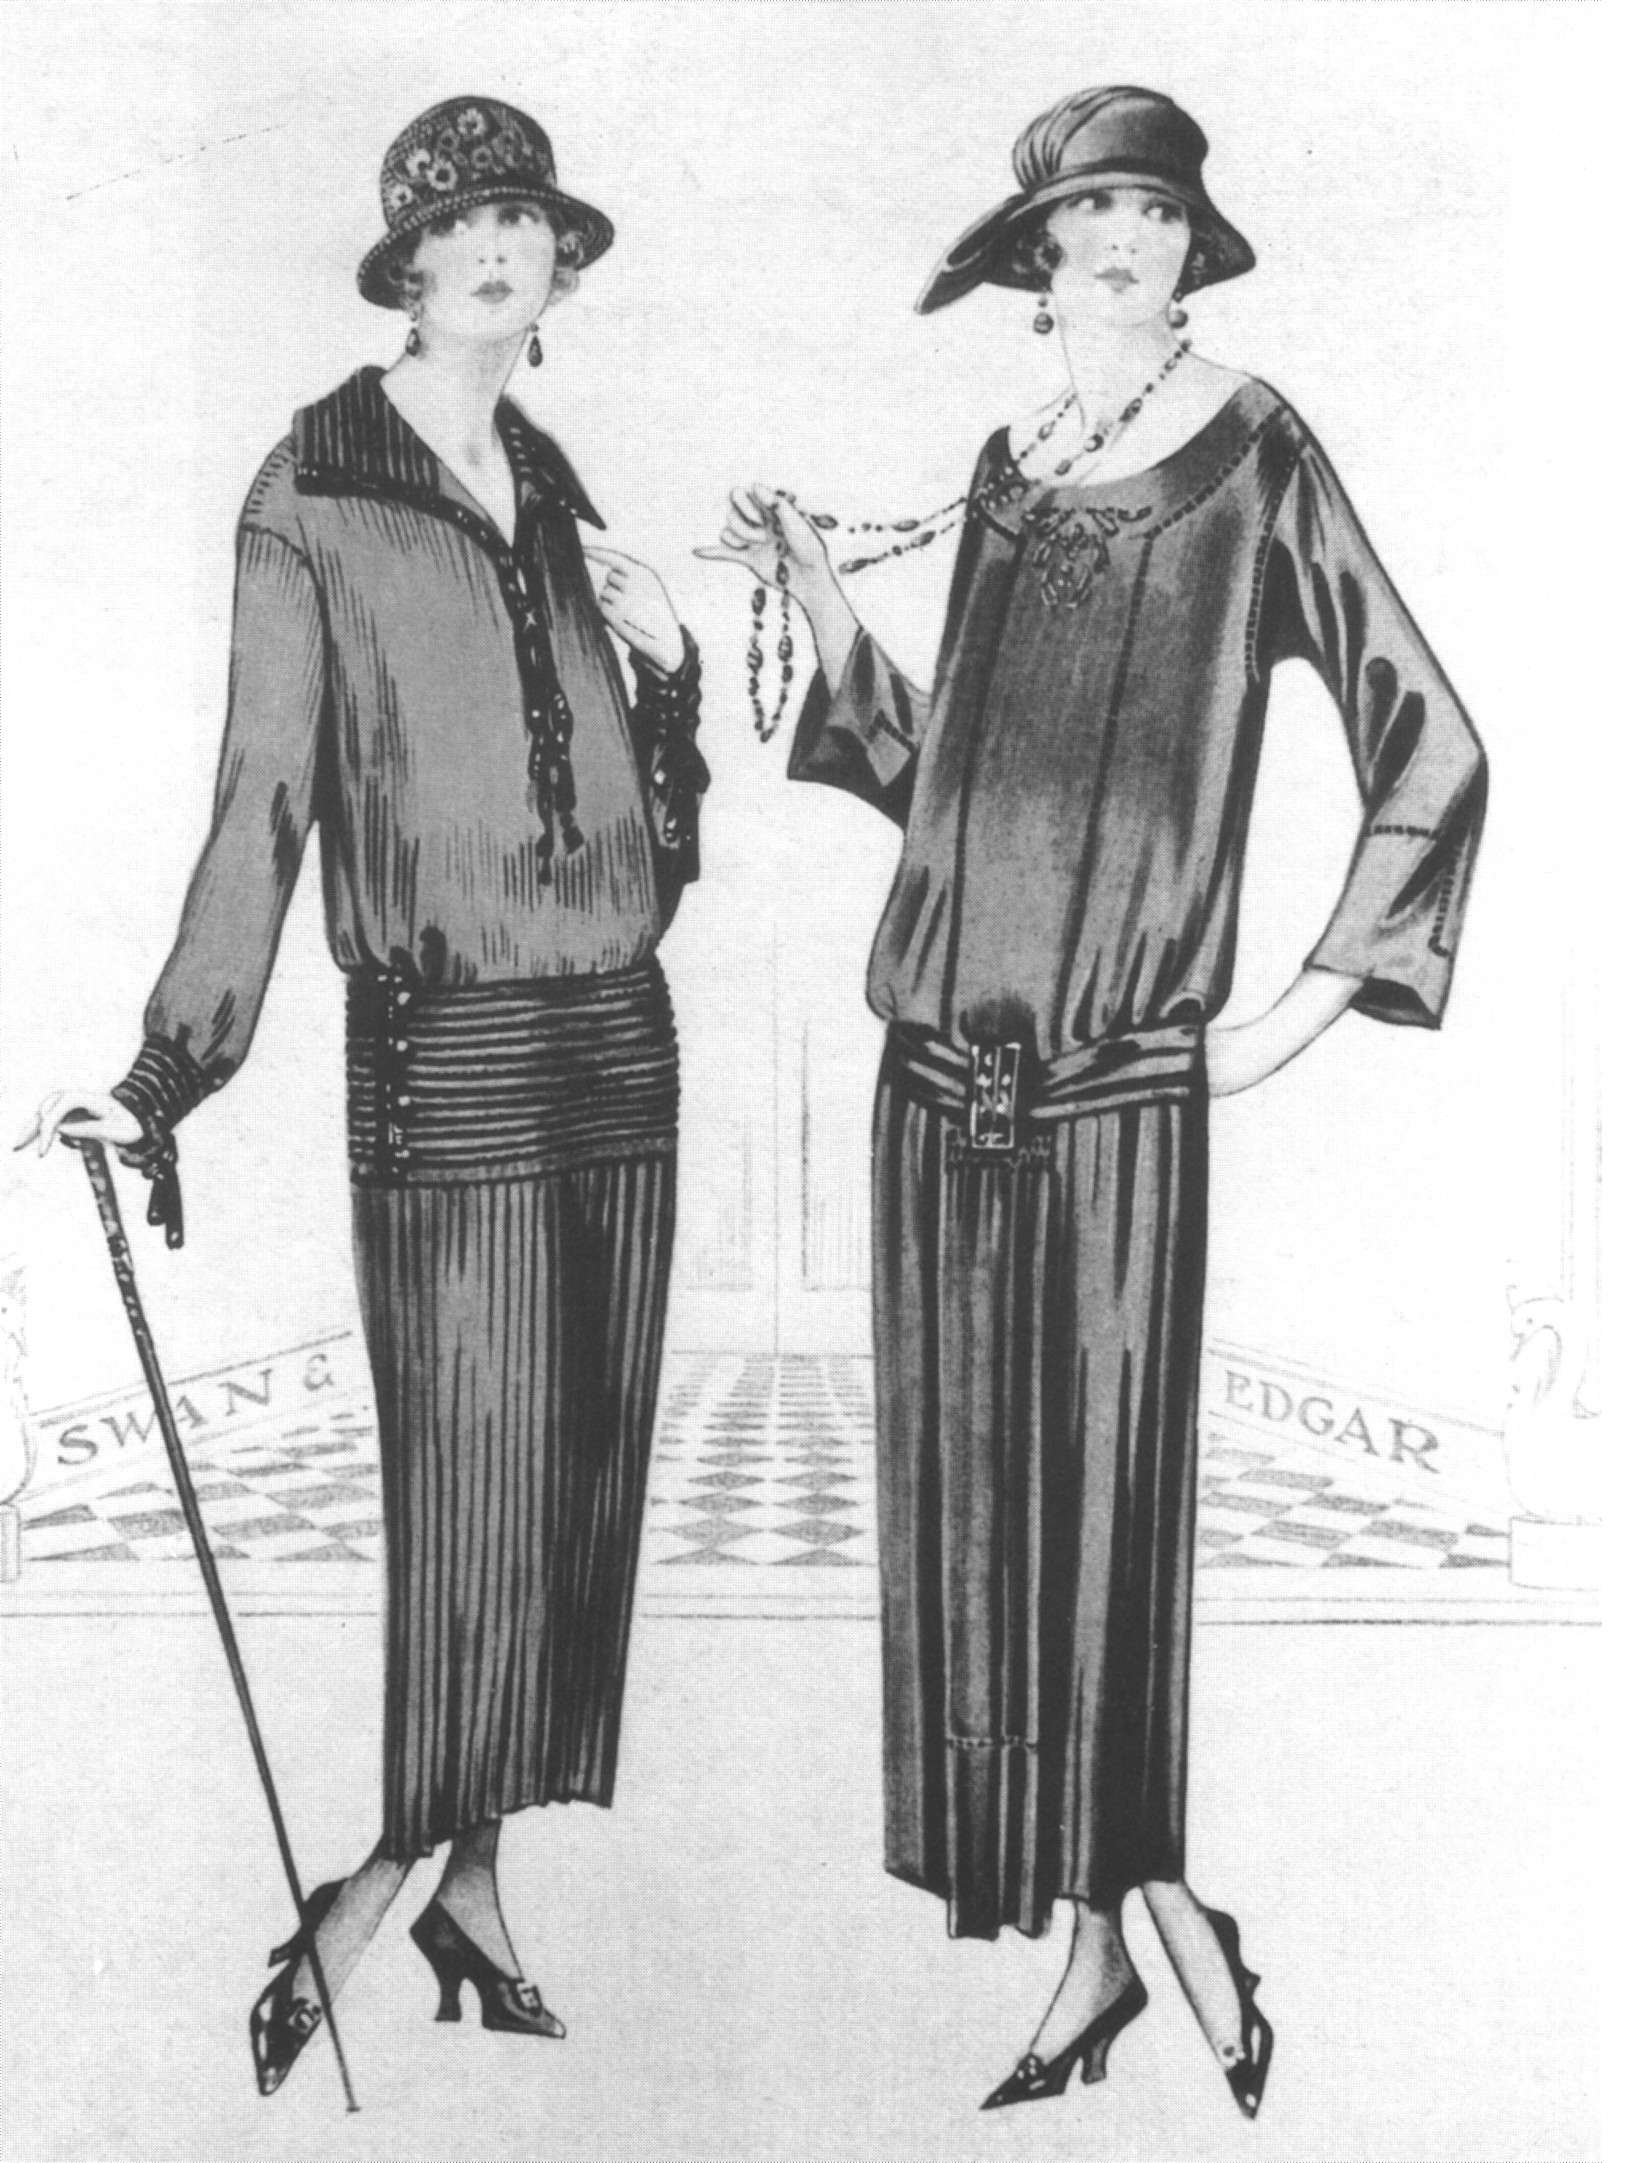 Parfaite représentation de la mode de années 1920 pour le jour et le début de la soirée